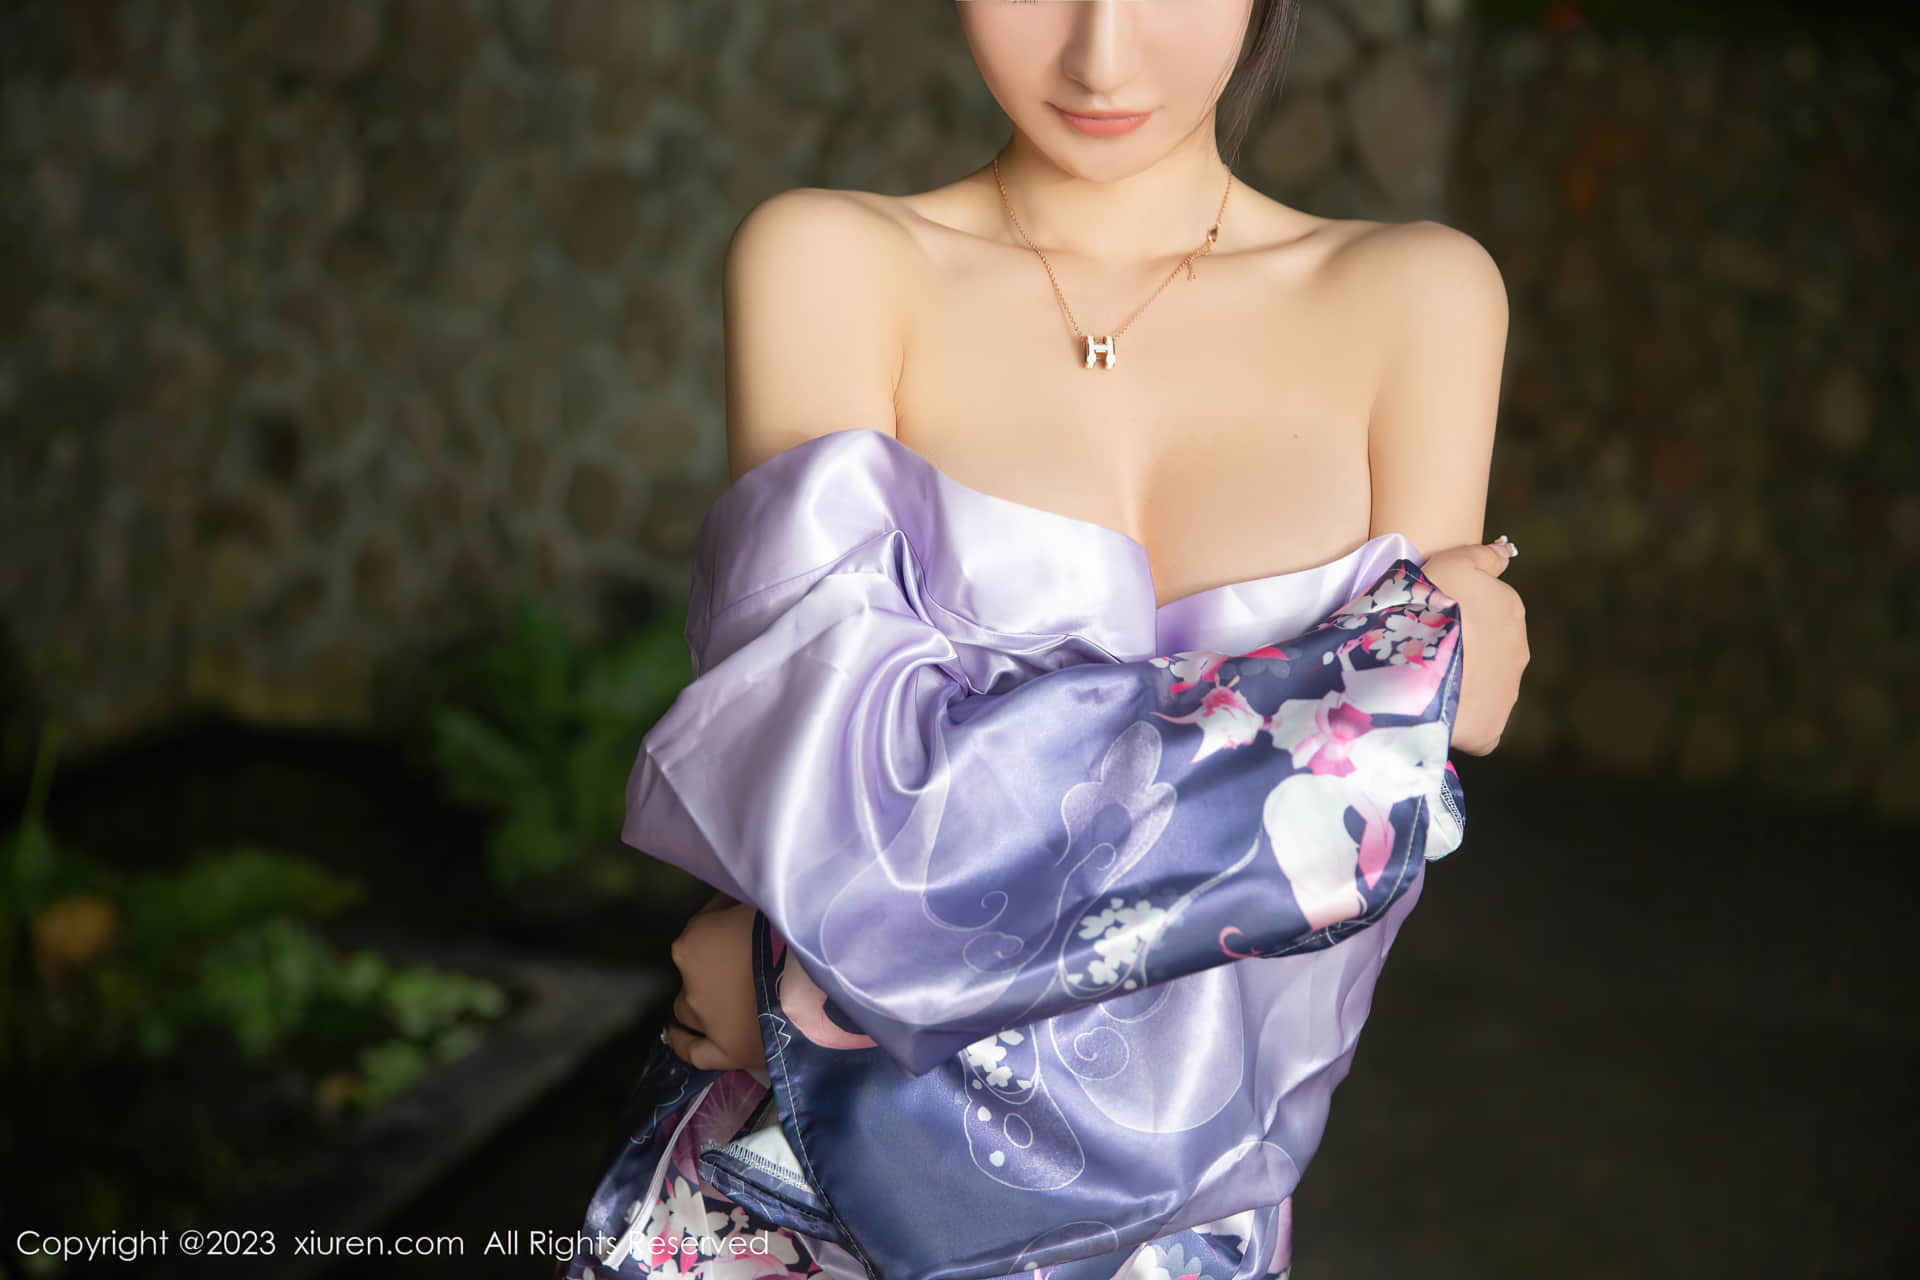 Xiong Xiaonuo 캐릭터, 일본식 보라색 기모노, 매력적인 아름다움, 우아하고 날씬한 몸매, 밝고 감동적인 캐릭터